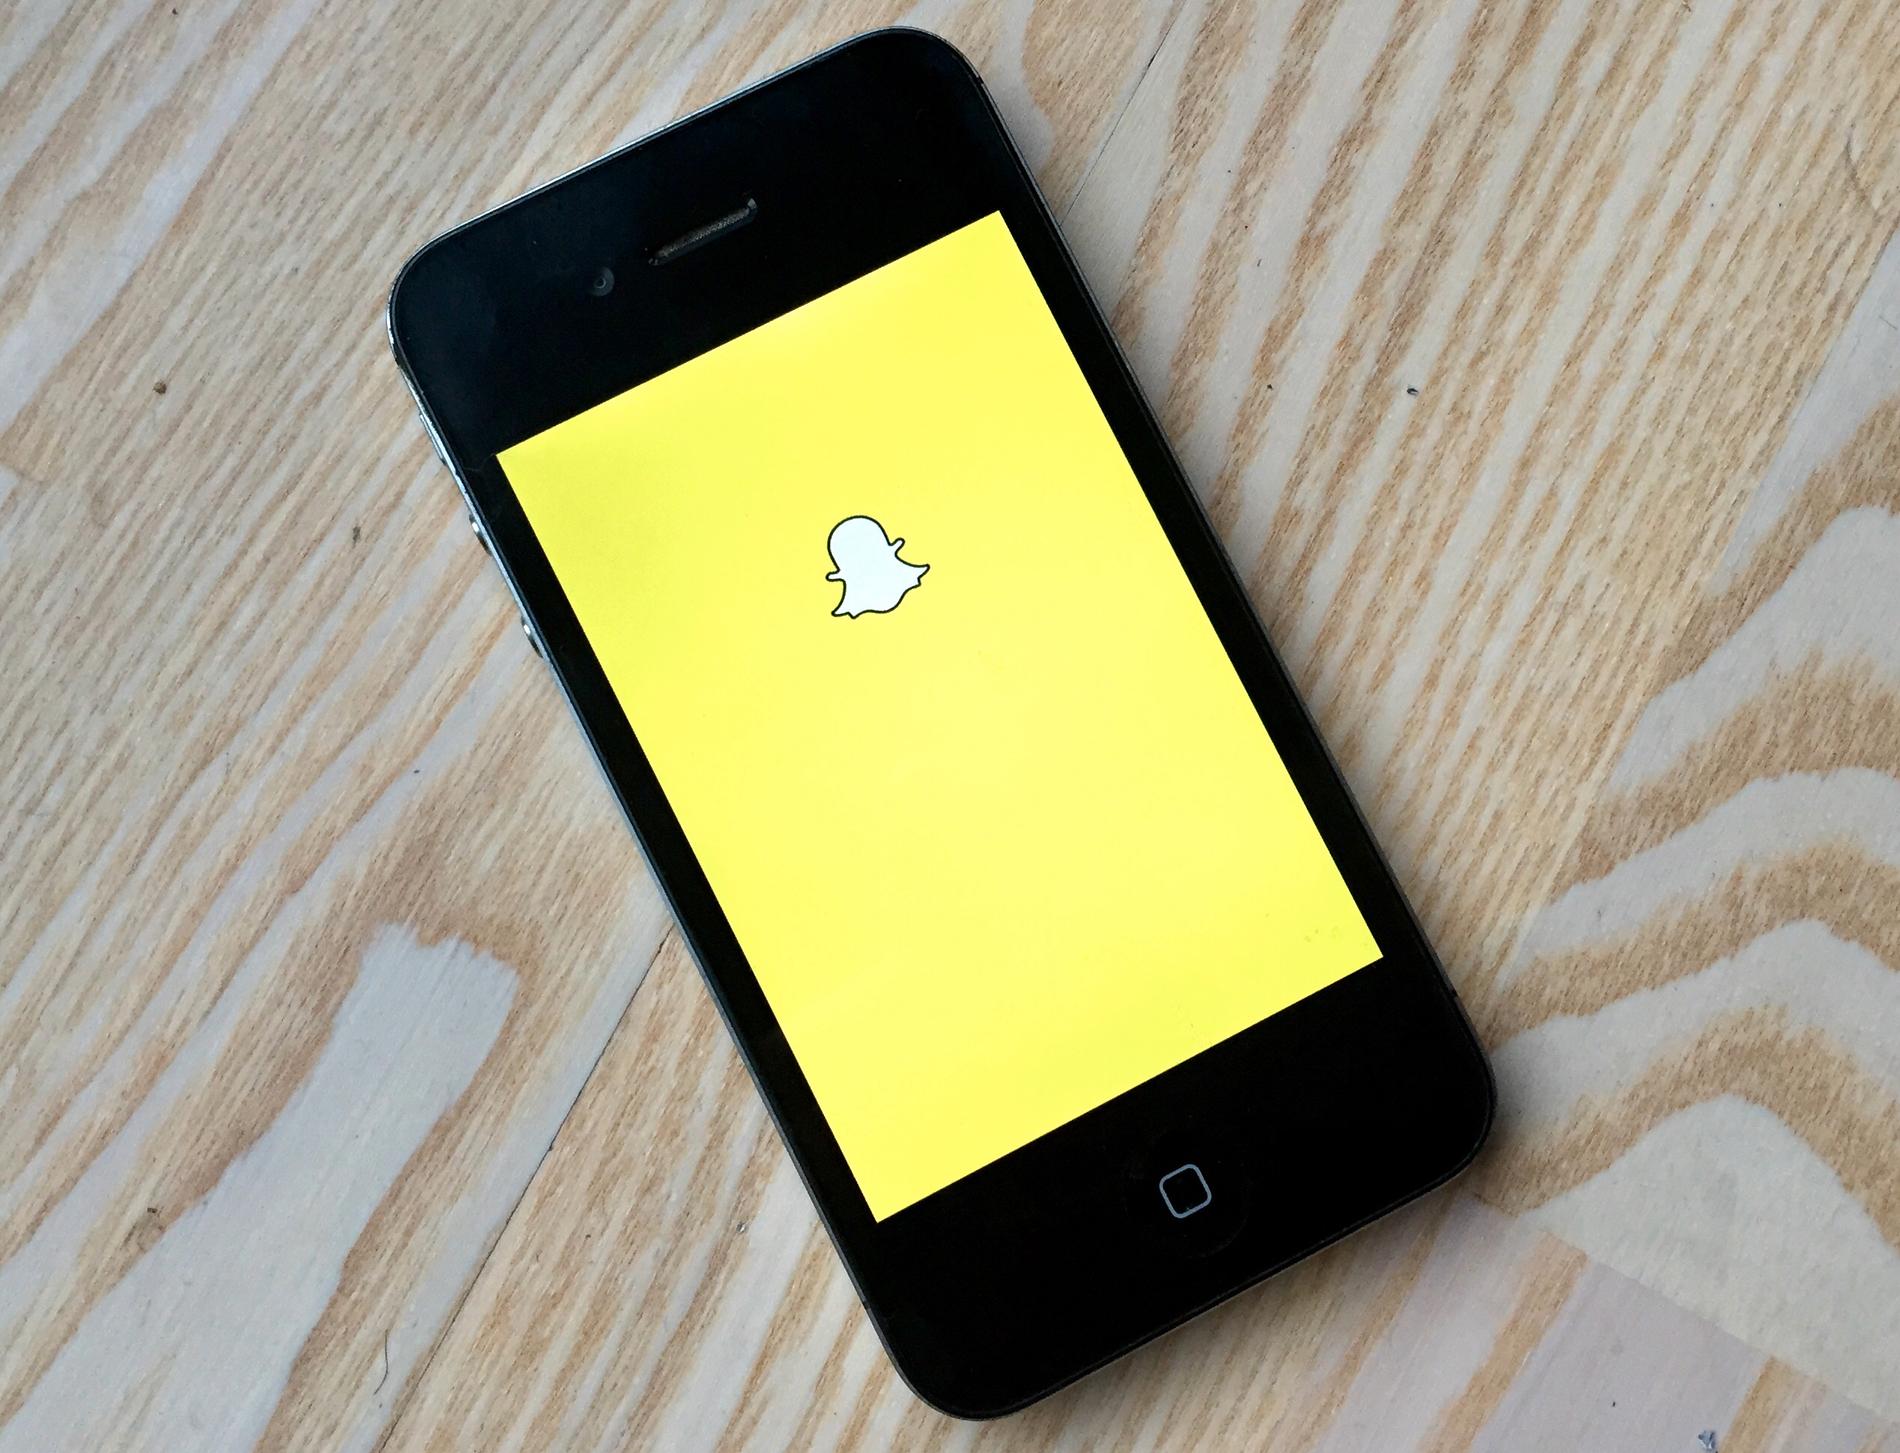 Nå kan du lage din egen emoji på Snapchat! Foto: Marianne Løvland / NTB scanpix